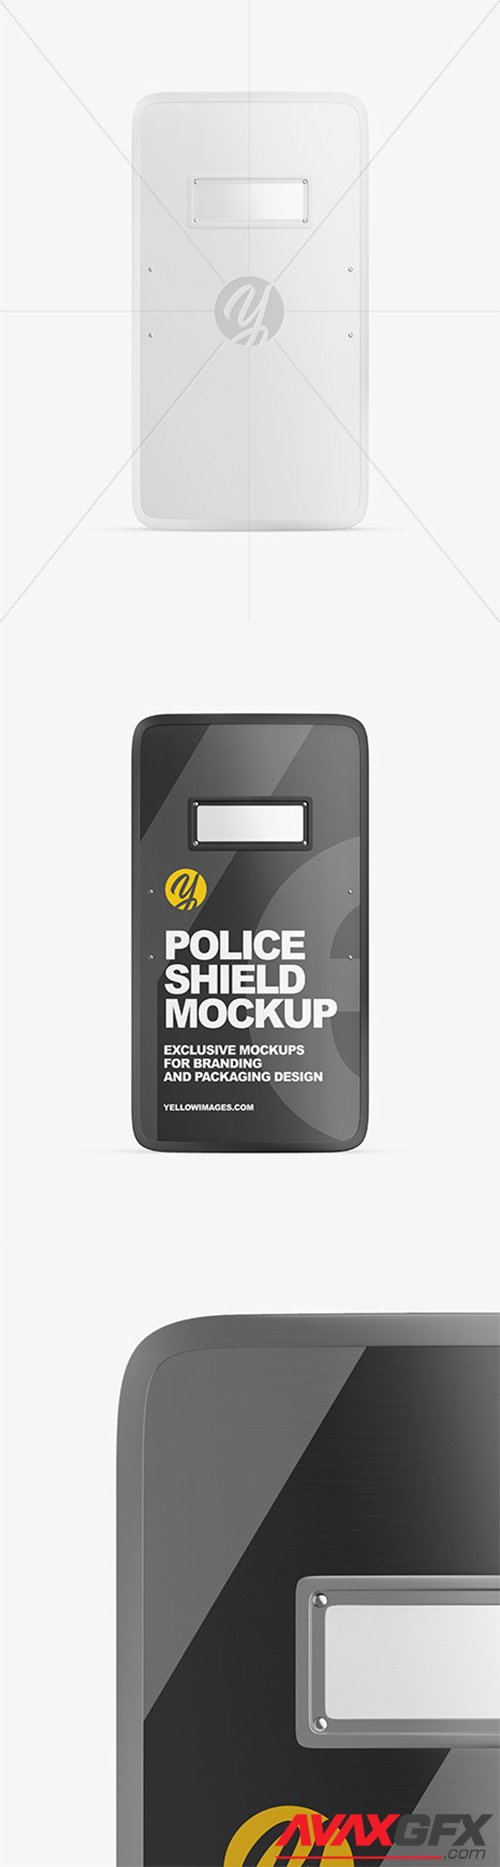 Police Shield Mockup 62746